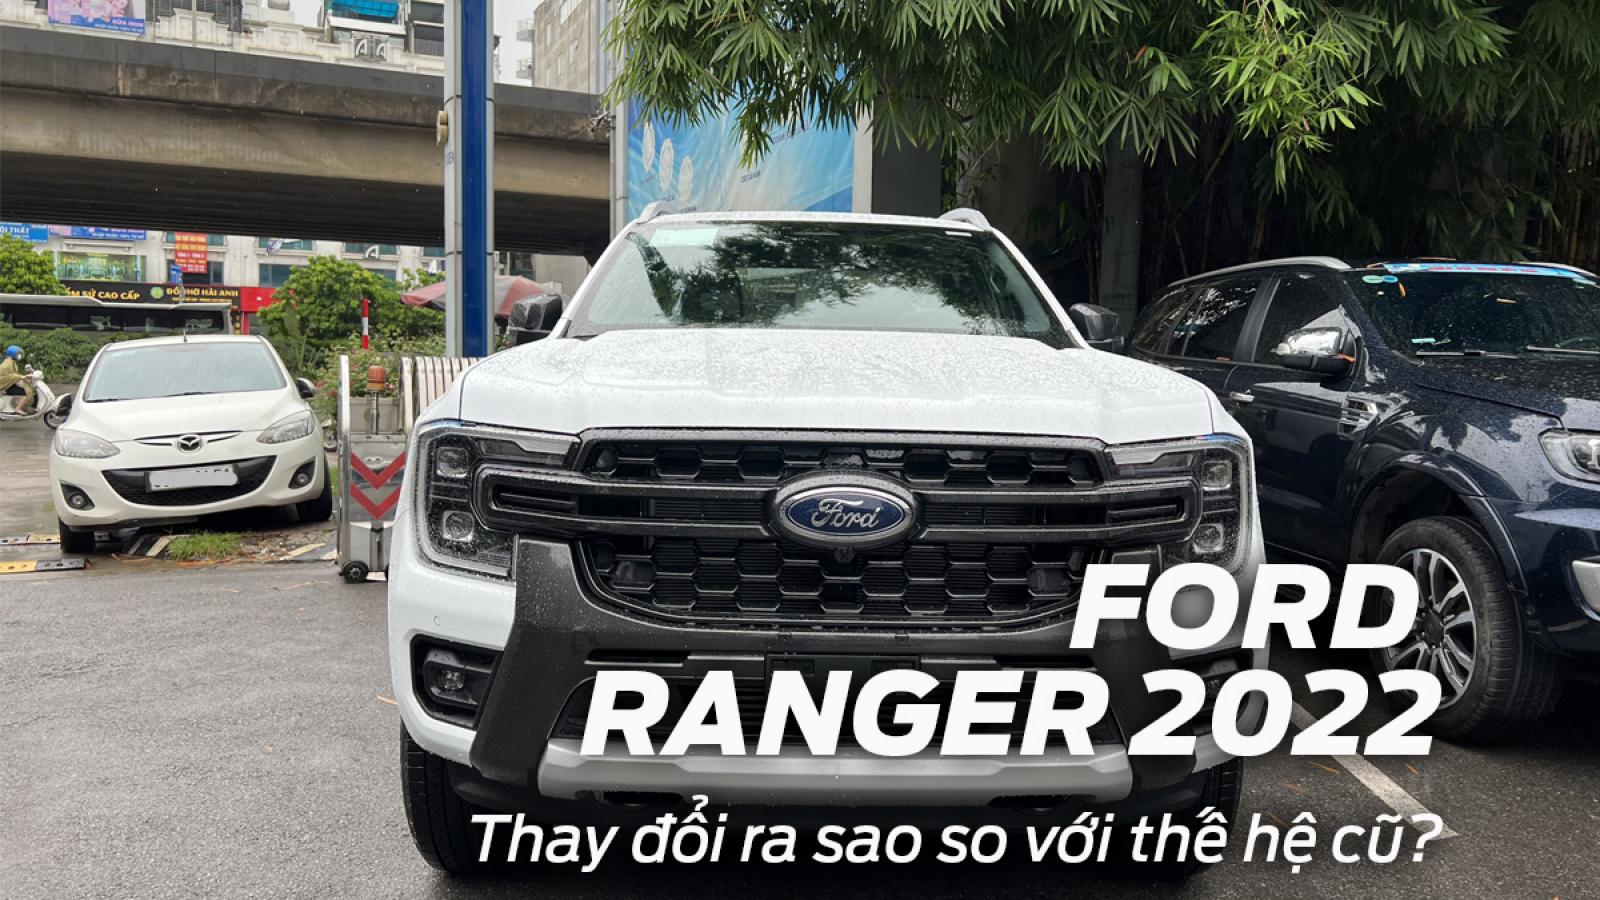 Ford Ranger 2022 thay đổi ra sao so với thế hệ cũ?